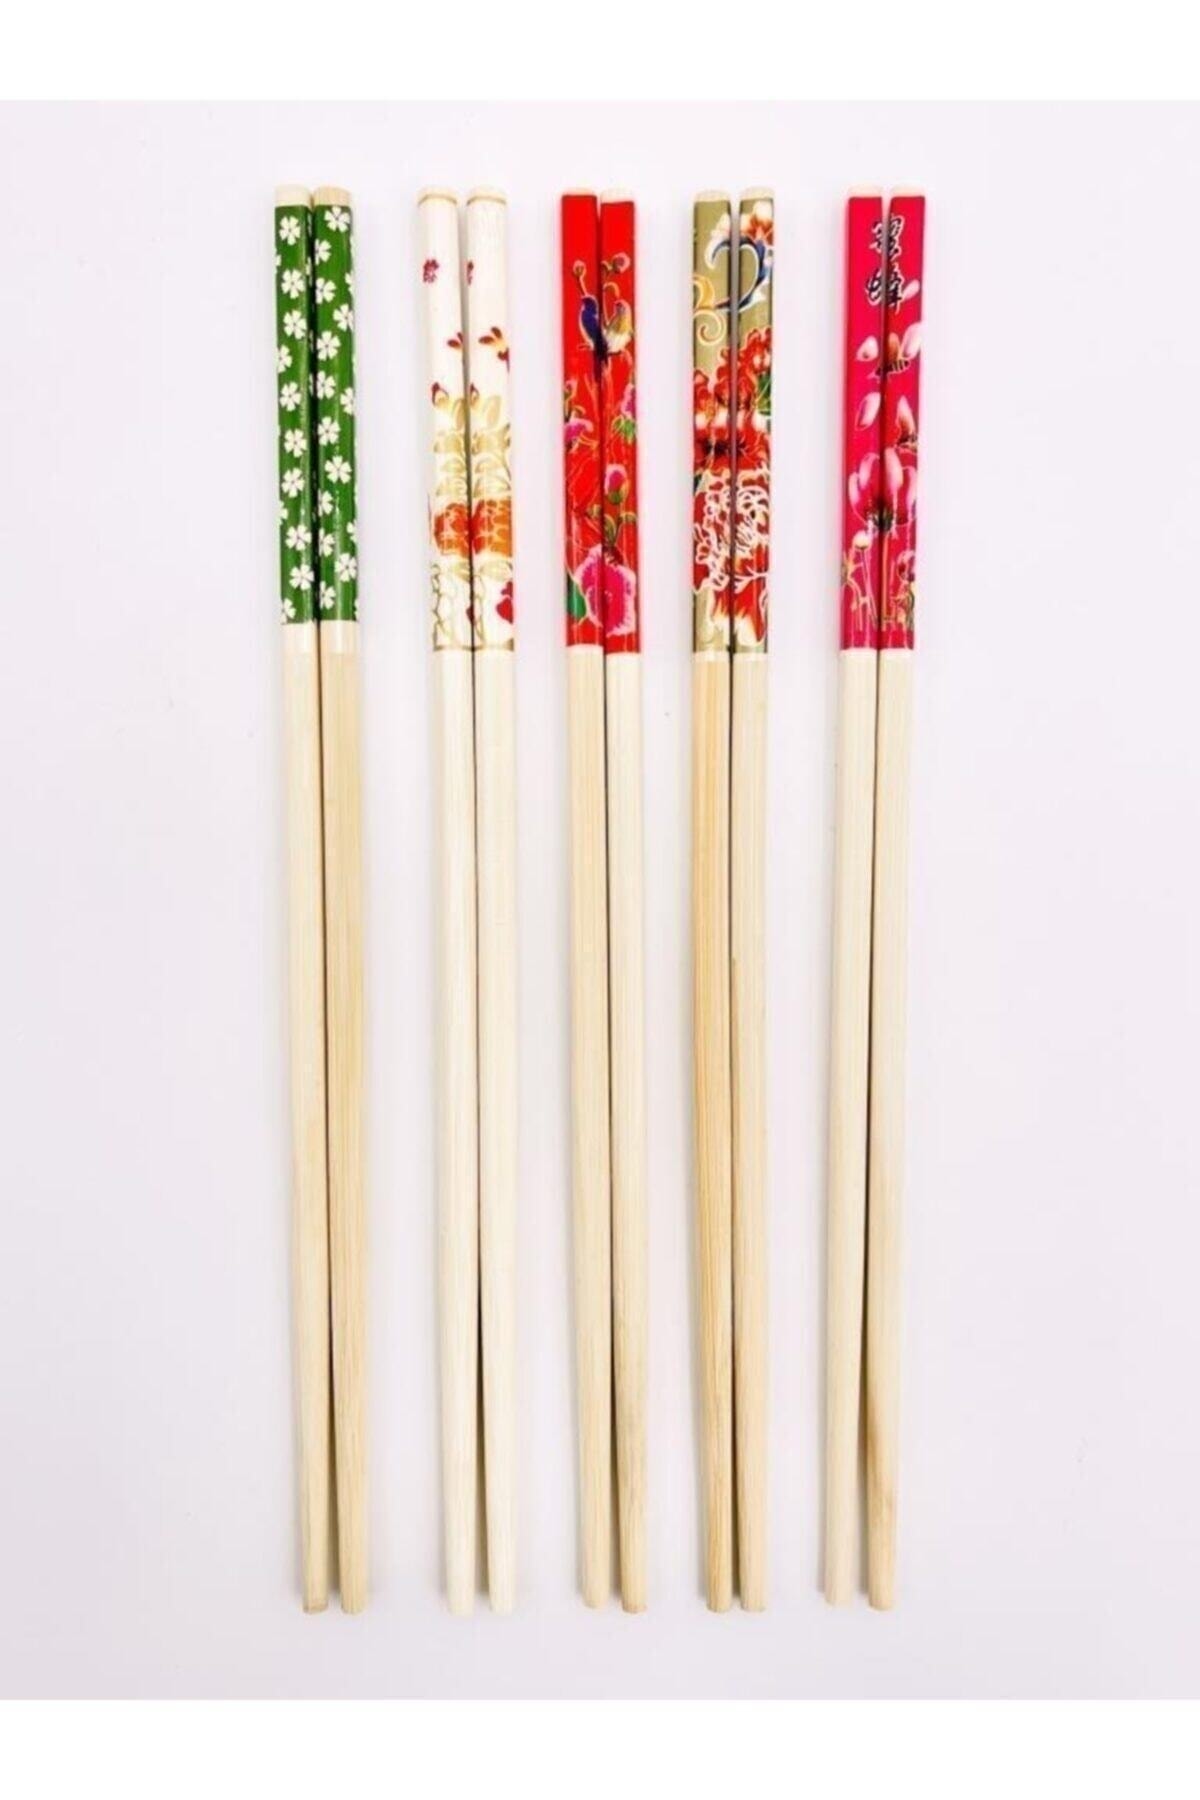 PEGA HOME 10 Adet Bambu Chopstick Ahşap Desenli Çin Çubuğu Yıkanabilir Ve Kullanılabilir 5 Çift